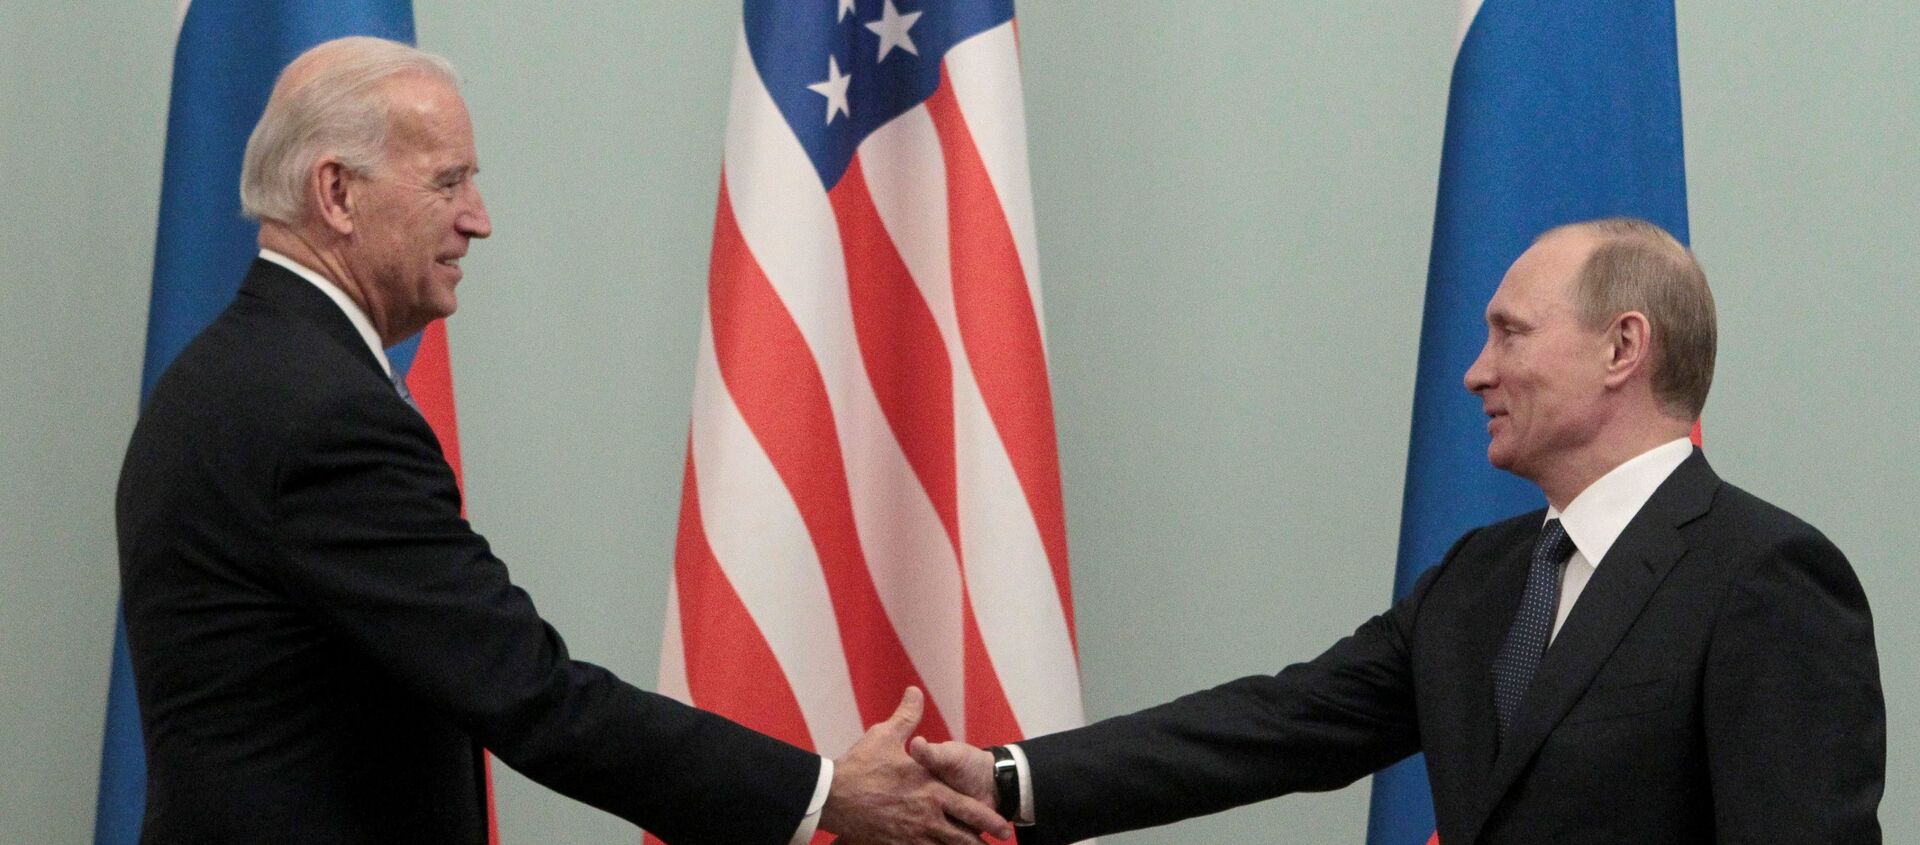 FILE PHOTO: Thủ tướng Nga Vladimir Putin (R) bắt tay Hoa Kỳ Phó Tổng thống Joe Biden trong cuộc gặp của họ tại Moscow ngày 10 tháng 3 năm 2011. - Sputnik Việt Nam, 1920, 03.06.2021